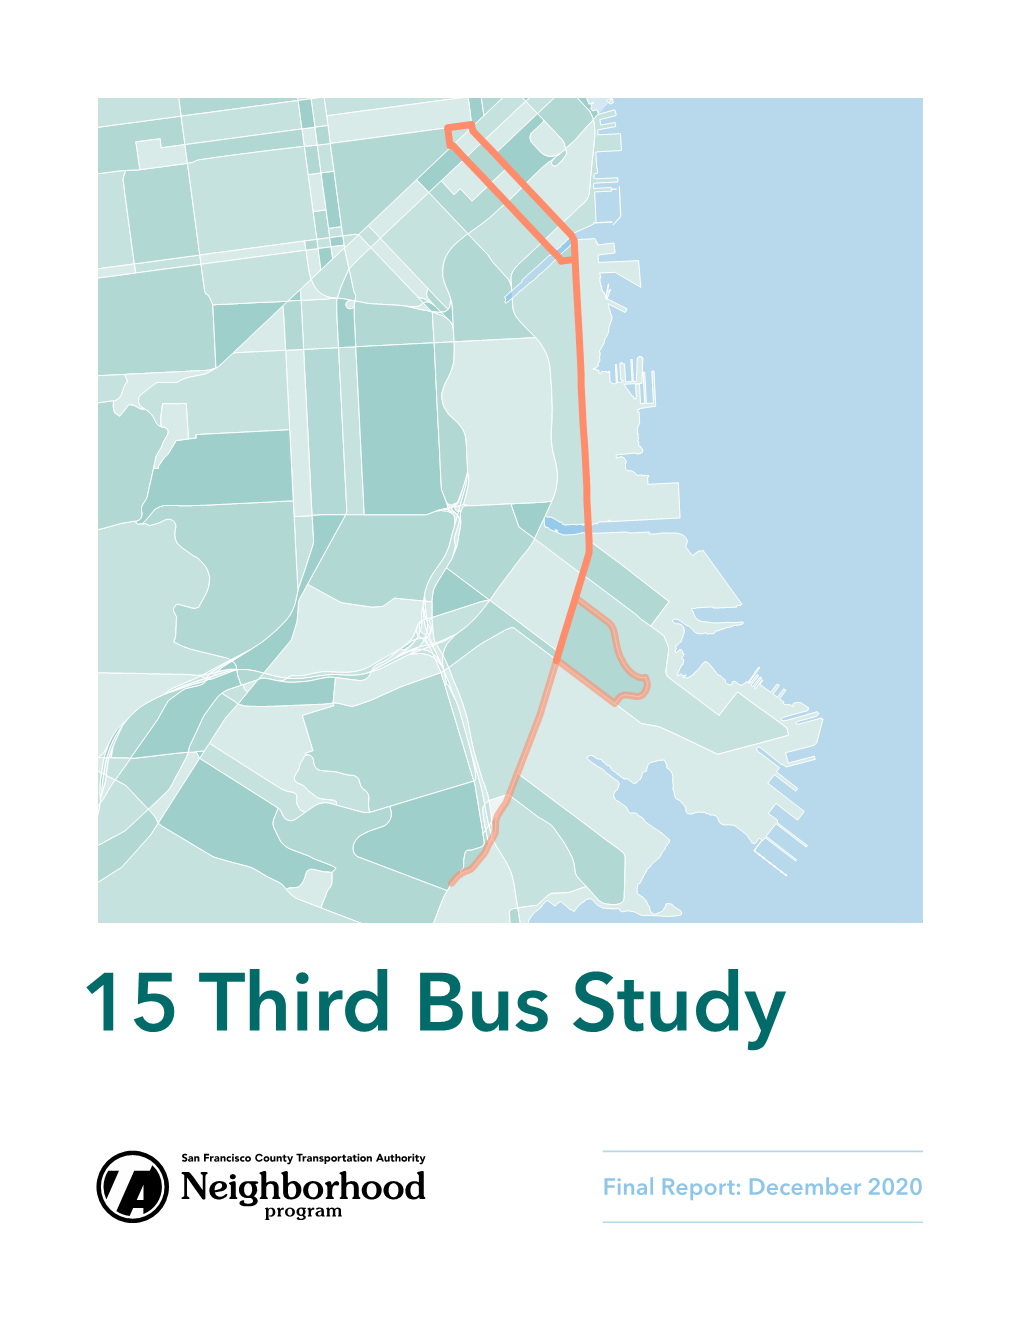 15 Third Street Bus Study Final Report